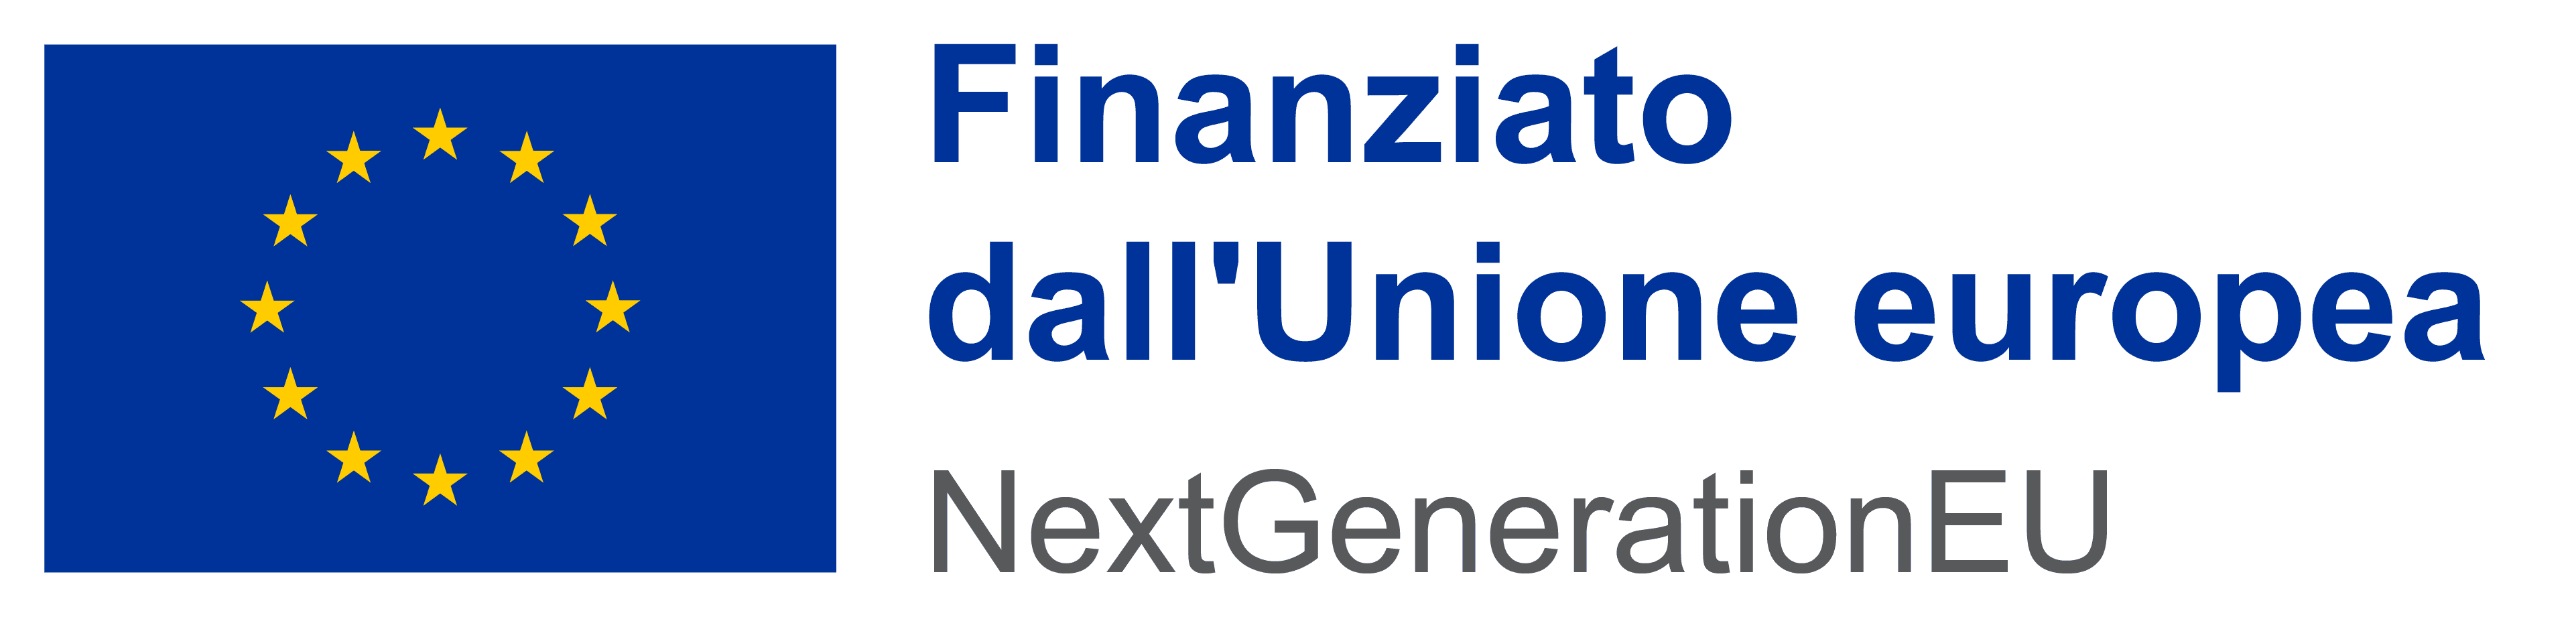 IT_Finanziato_dall_Unione_europea_RGB_POS.png